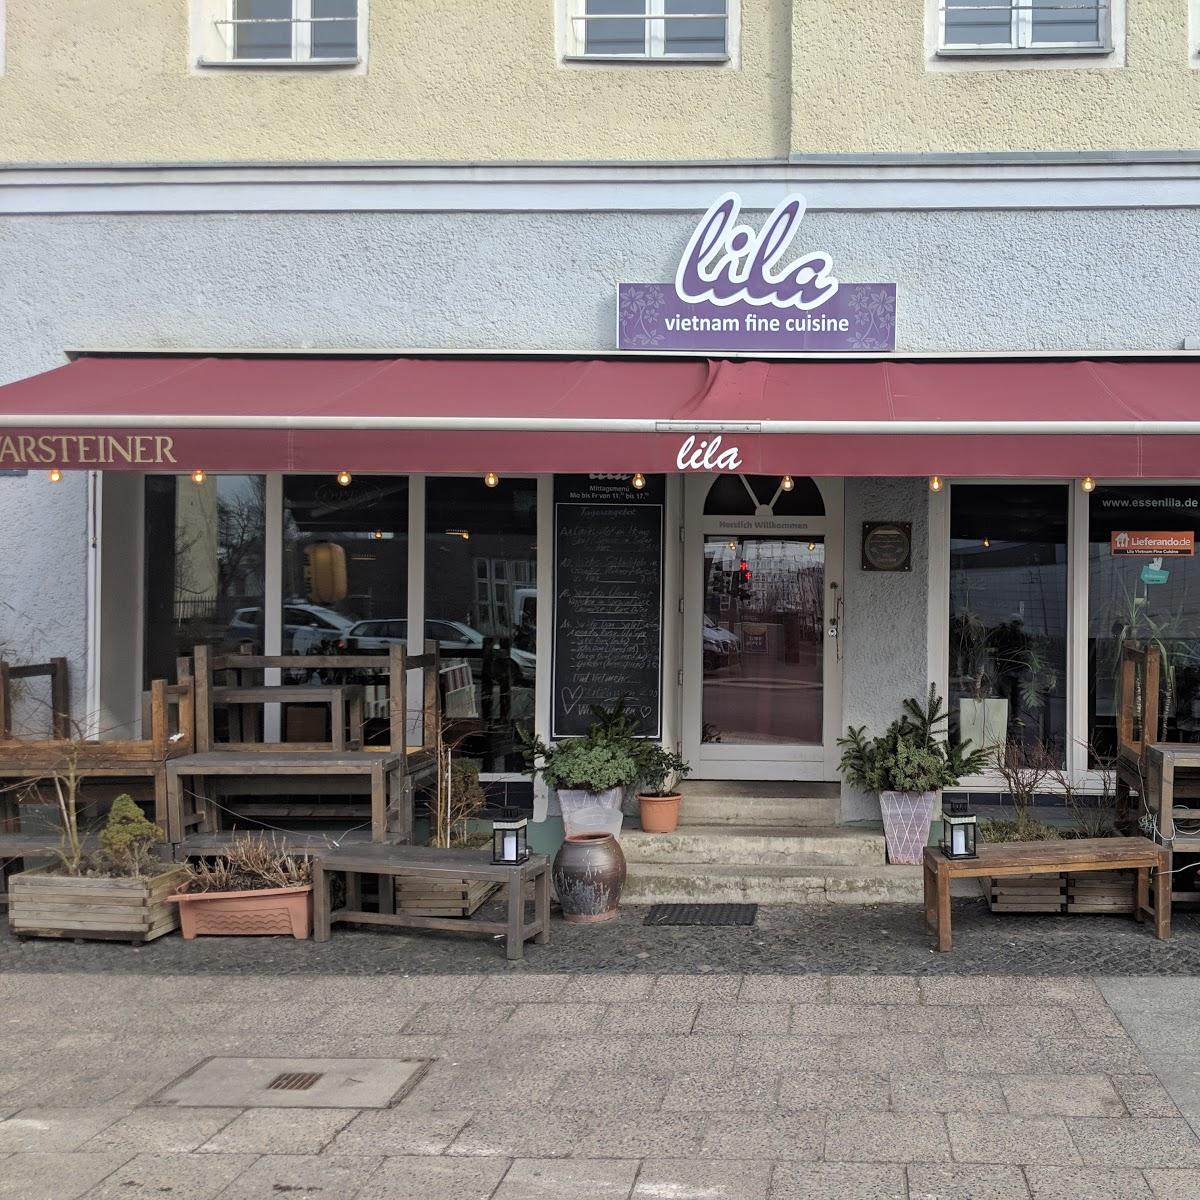 Restaurant "Restaurant lila" in Berlin